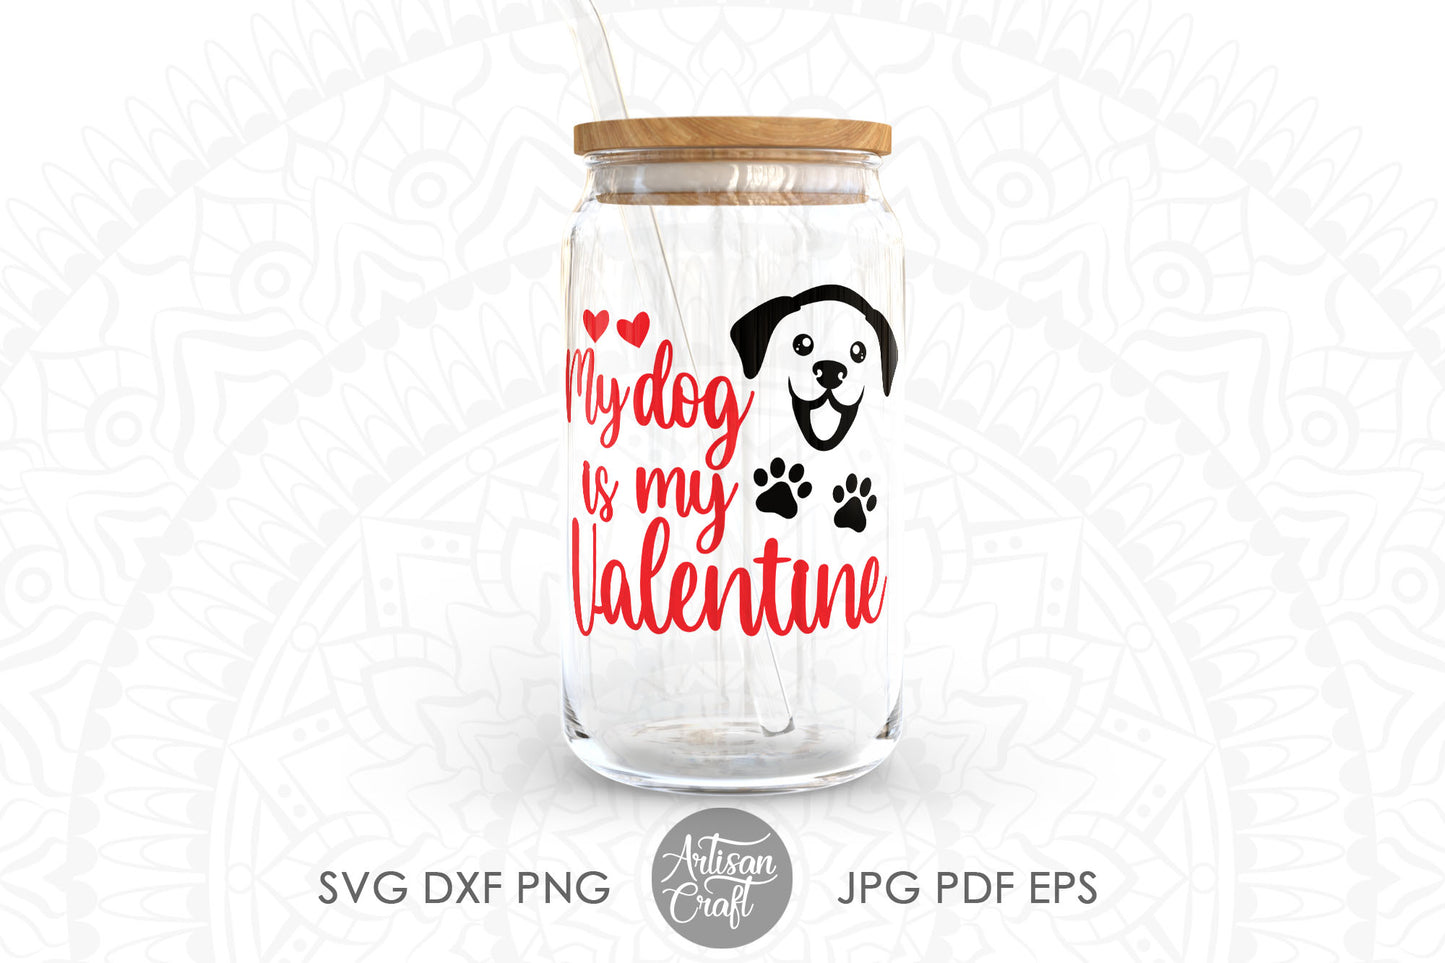 My dog is my valentine SVG, dog valentine quotes